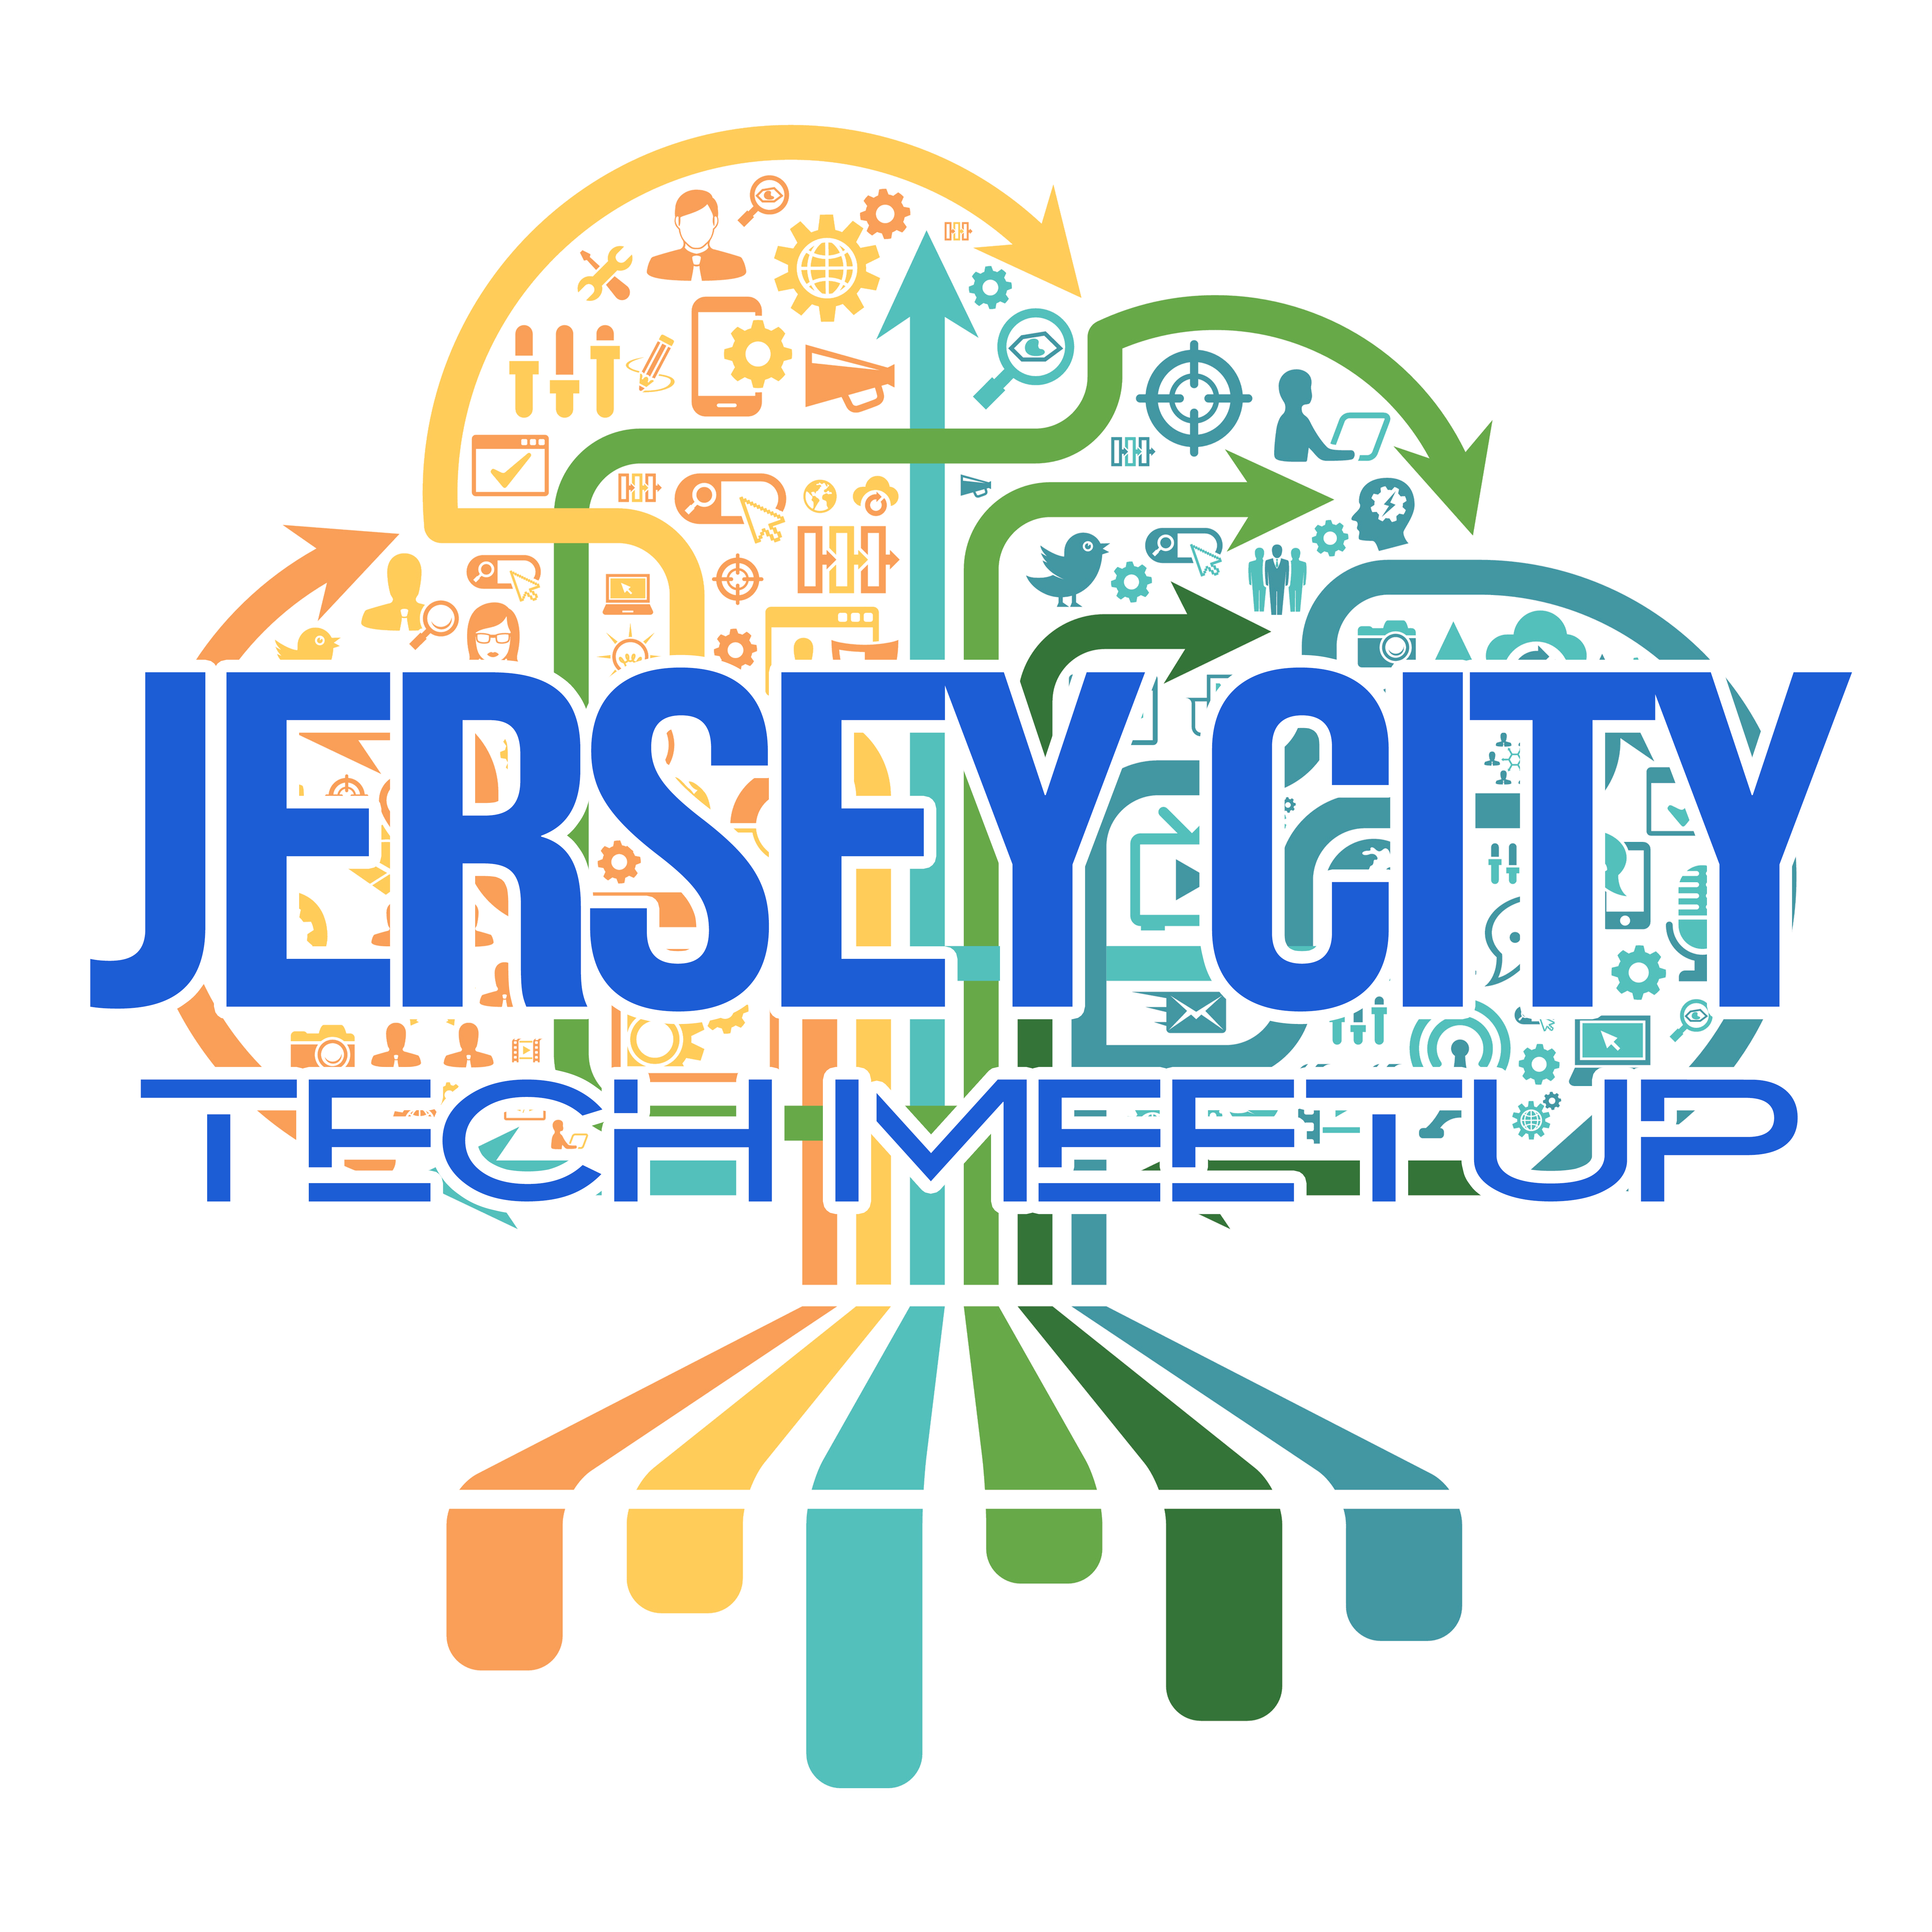 Jersey City Tech Meetup